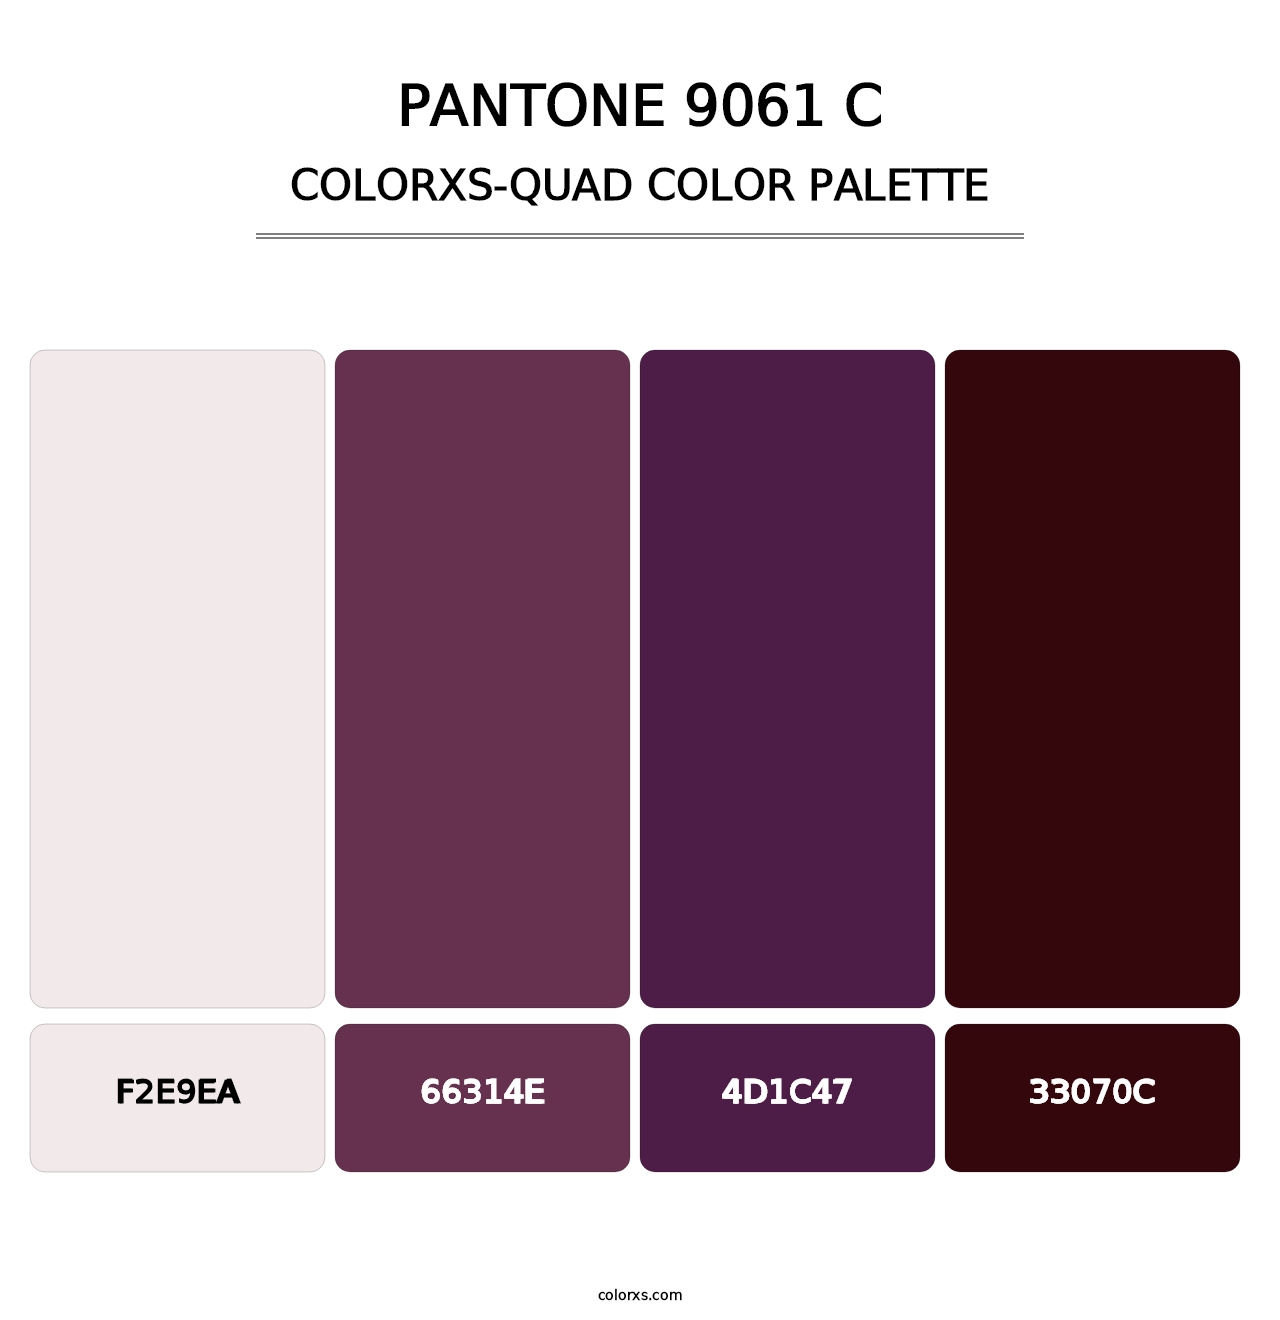 PANTONE 9061 C - Colorxs Quad Palette